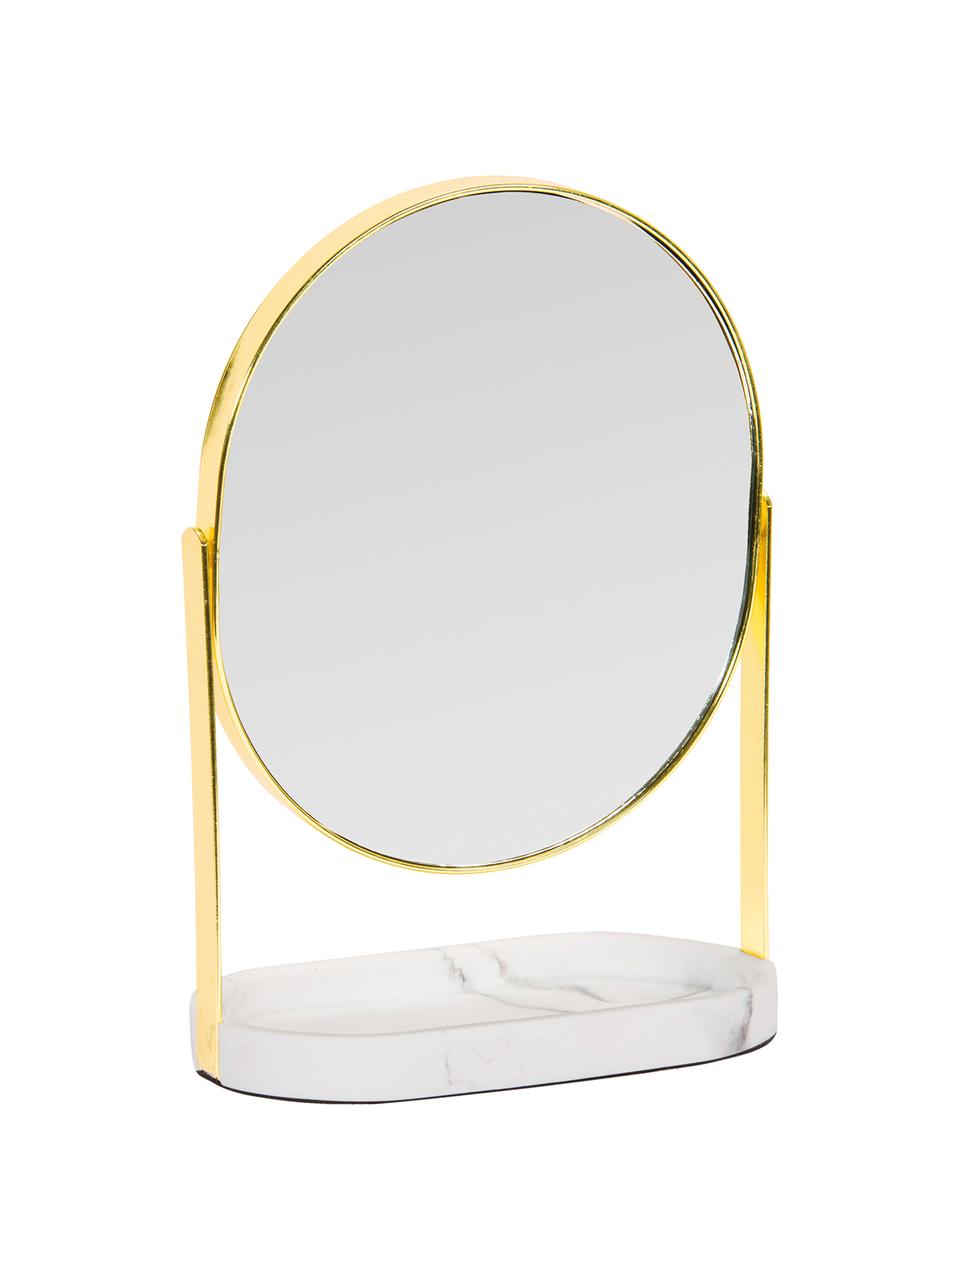  TIANGU Espejo redondo dorado montado en la pared, espejos  circulares grandes de 23.6 pulgadas para pared, espejo de pared con marco  de metal para baño, espejo de tocador moderno grande para